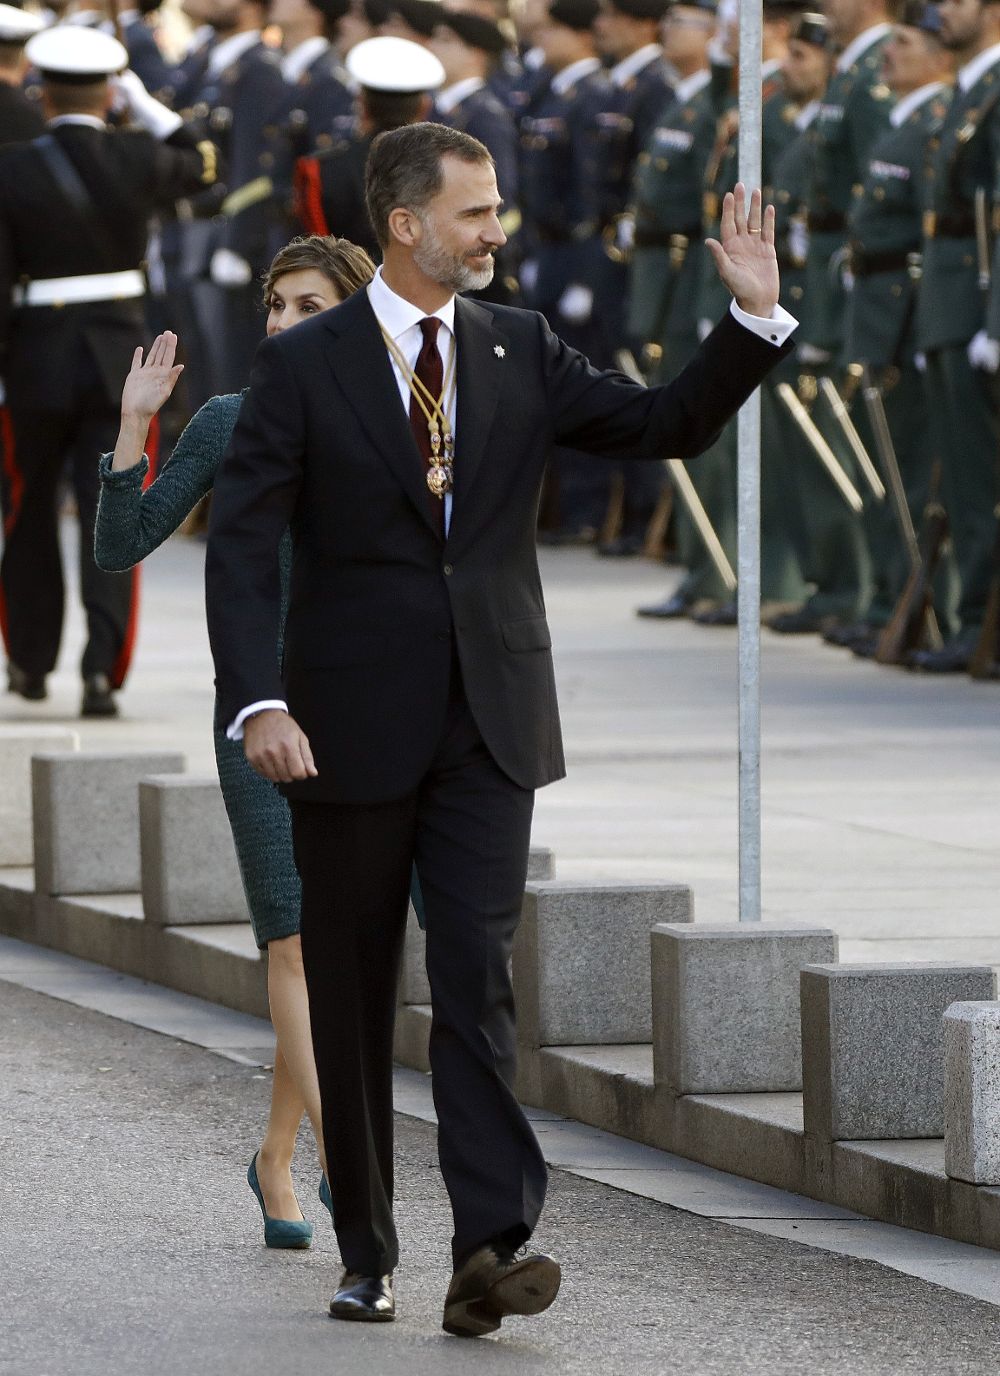 El Rey Felipe VI saluda, junto a la Reina Letizia, a su llegada al Palacio de las Cortes donde preside hoy la solemne ceremonia de apertura de la XII Legislatura en el Congreso de los Diputados.